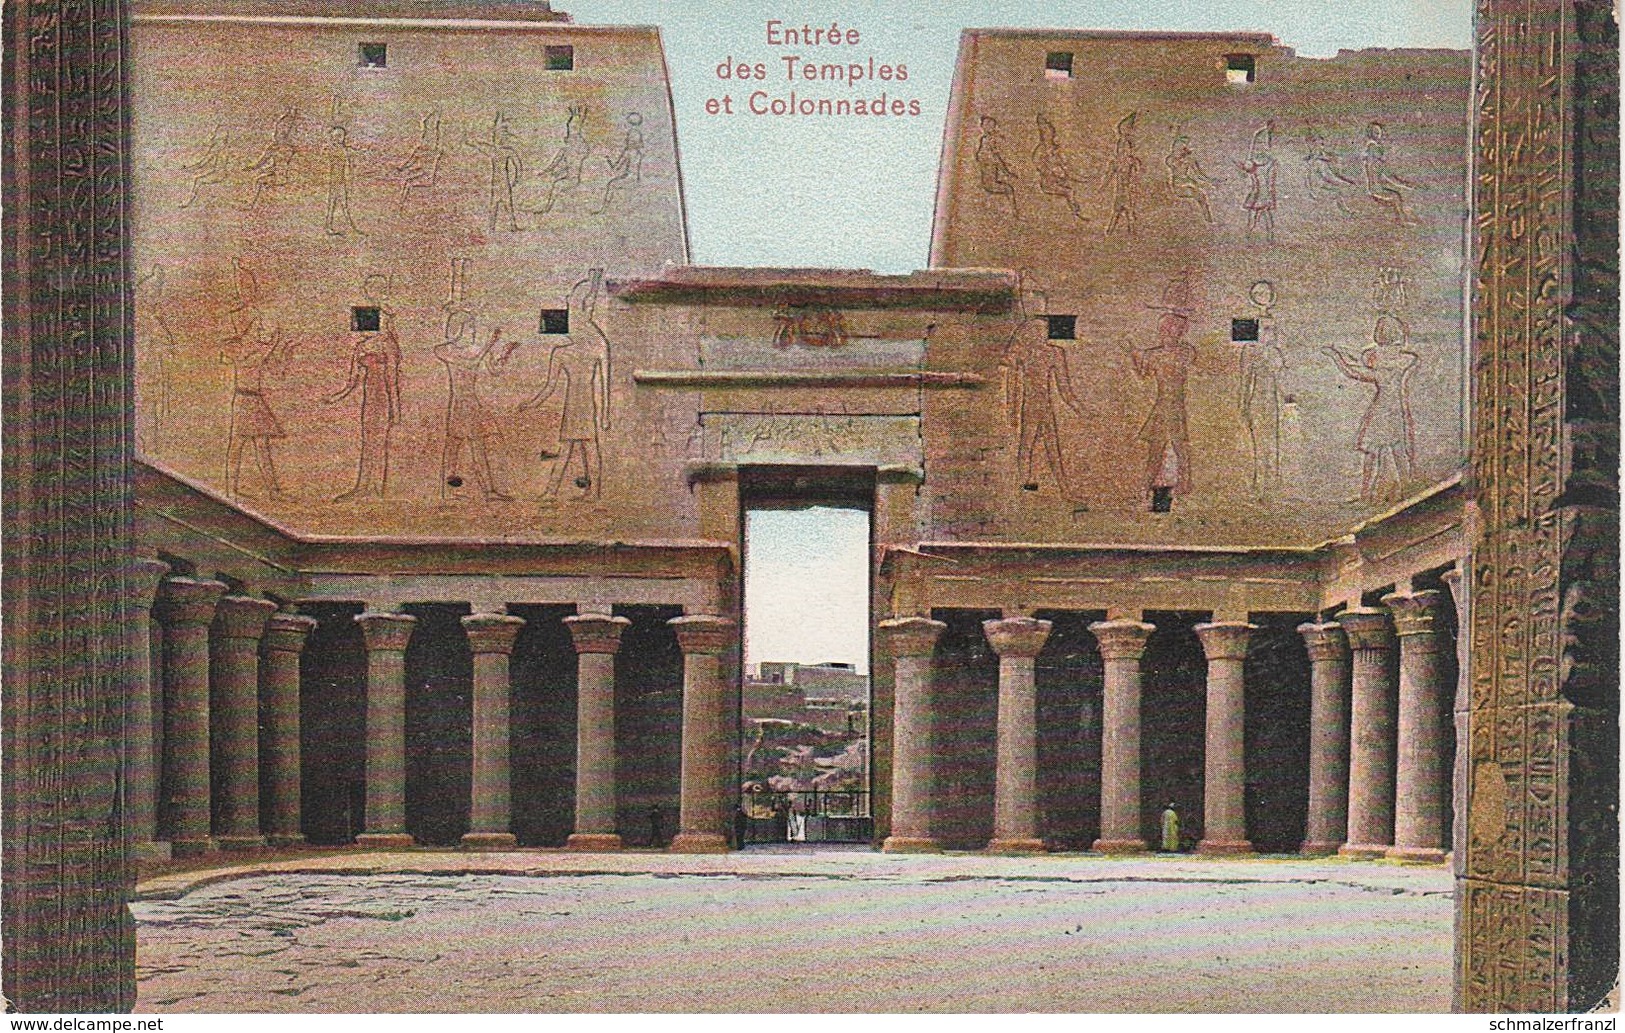 CPA AK Denderak Dendera دندرة Entrée Colonnades Temple معبد A Qina Qena قنا Ägypten Egypt مصر Egypte - Qina